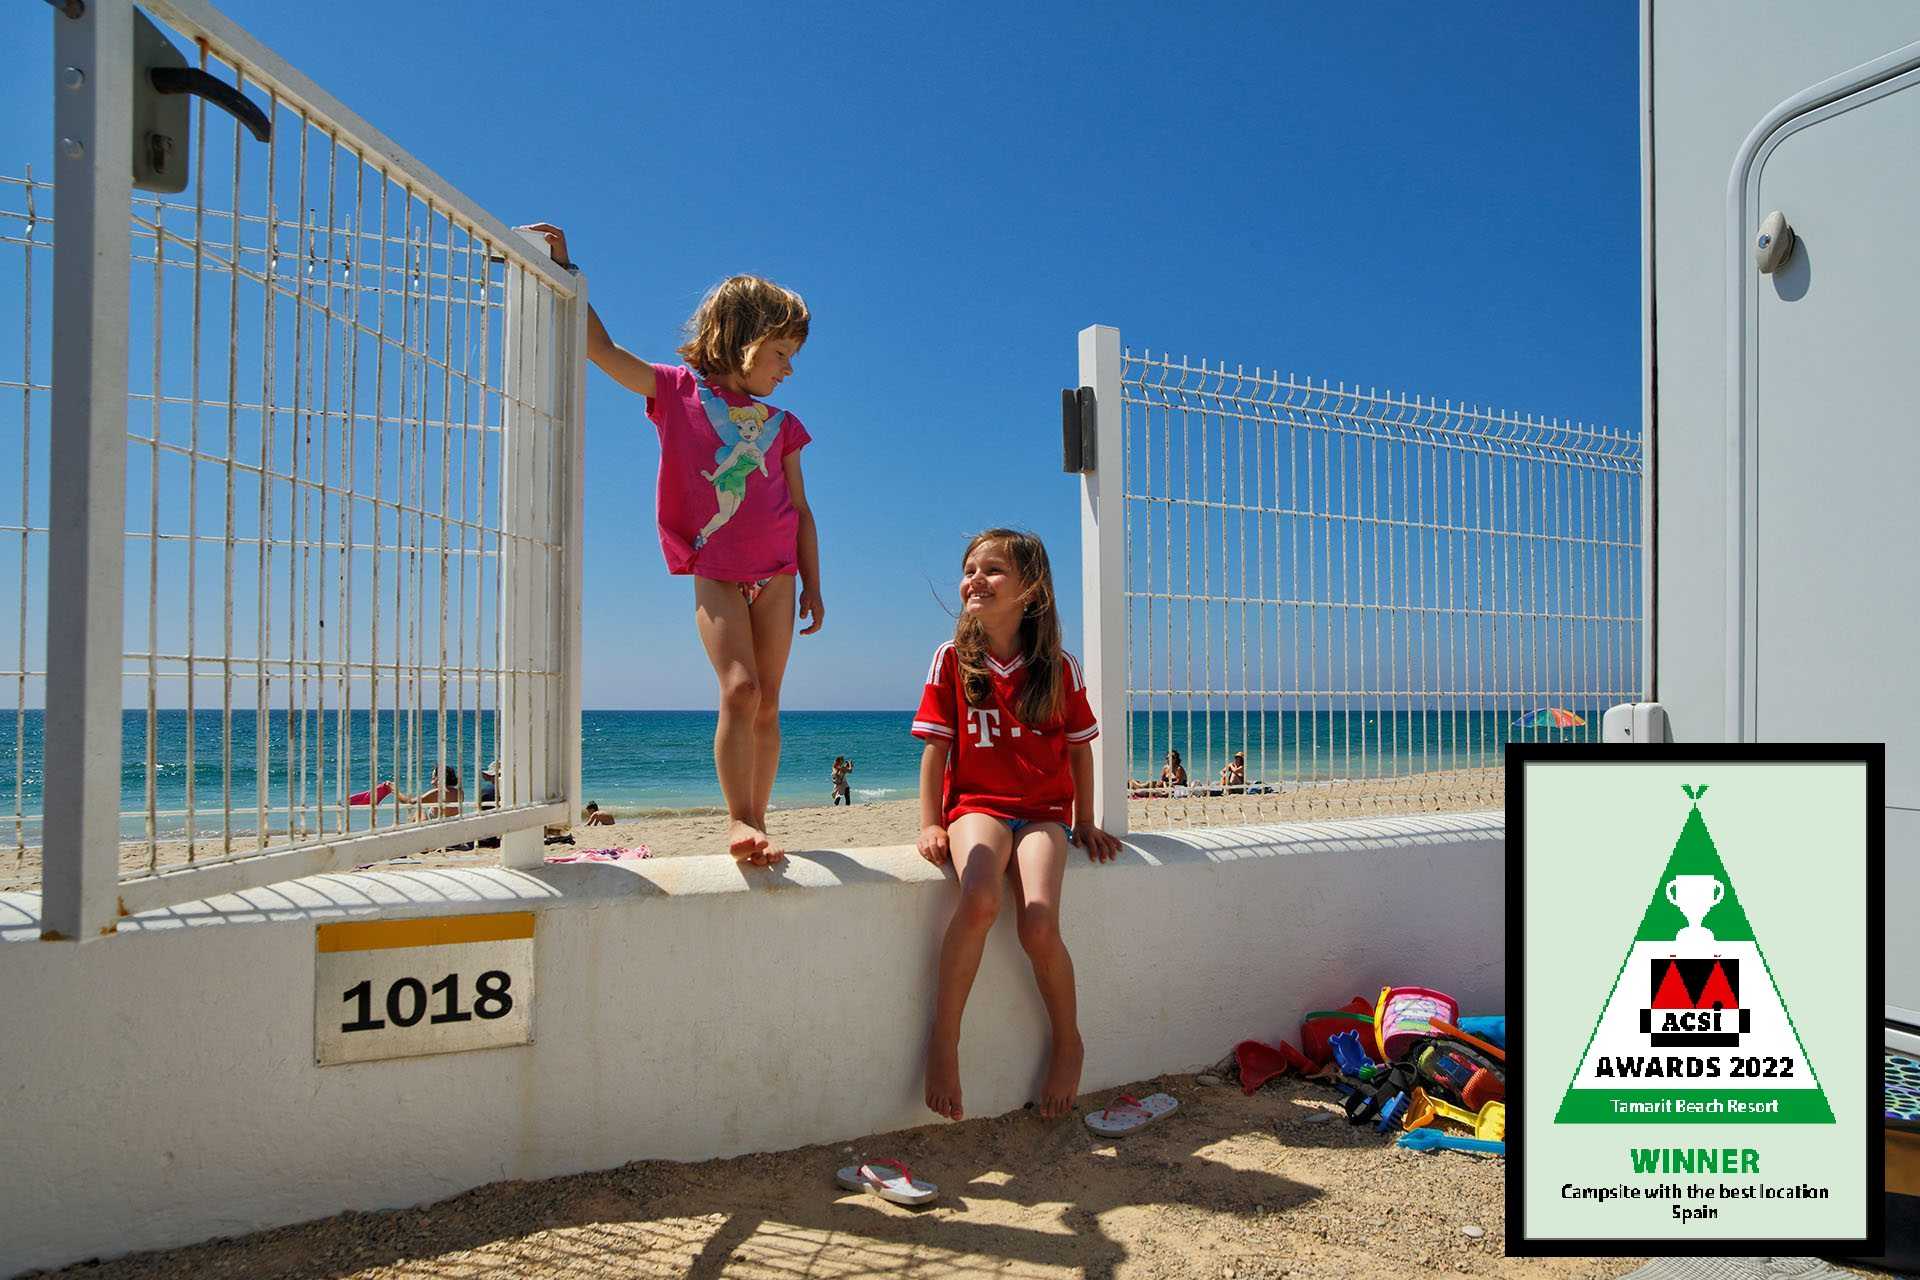 Tamarit Beach Resort Campingplatz mit bester Lage in Spanien